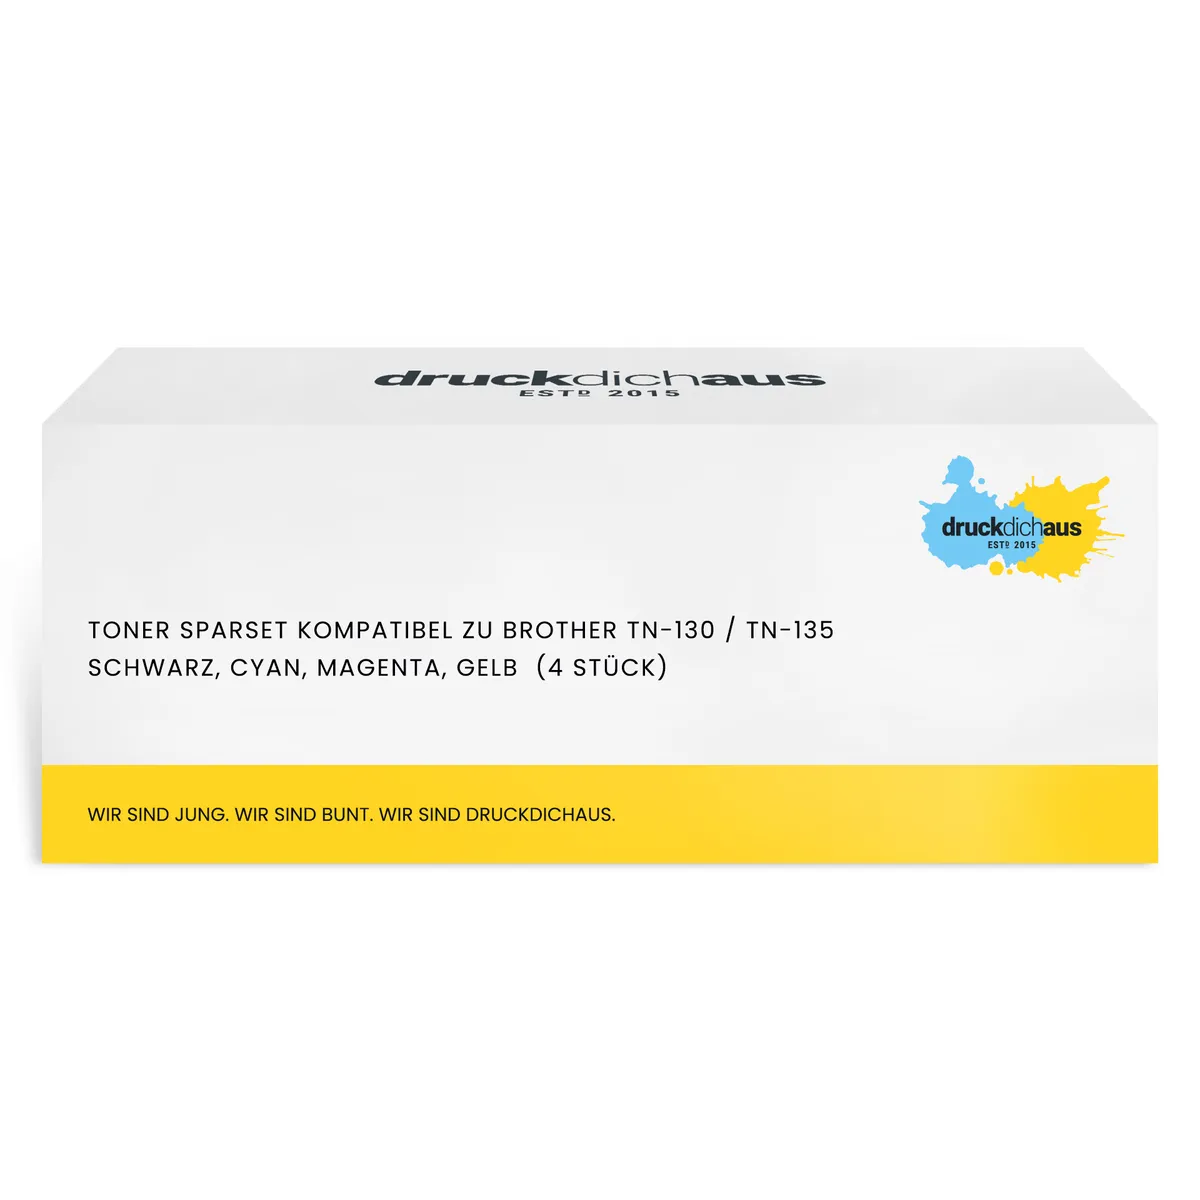 Toner Sparset kompatibel zu Brother TN-130 / TN-135 schwarz, cyan, magenta, gelb  (4 Stück)